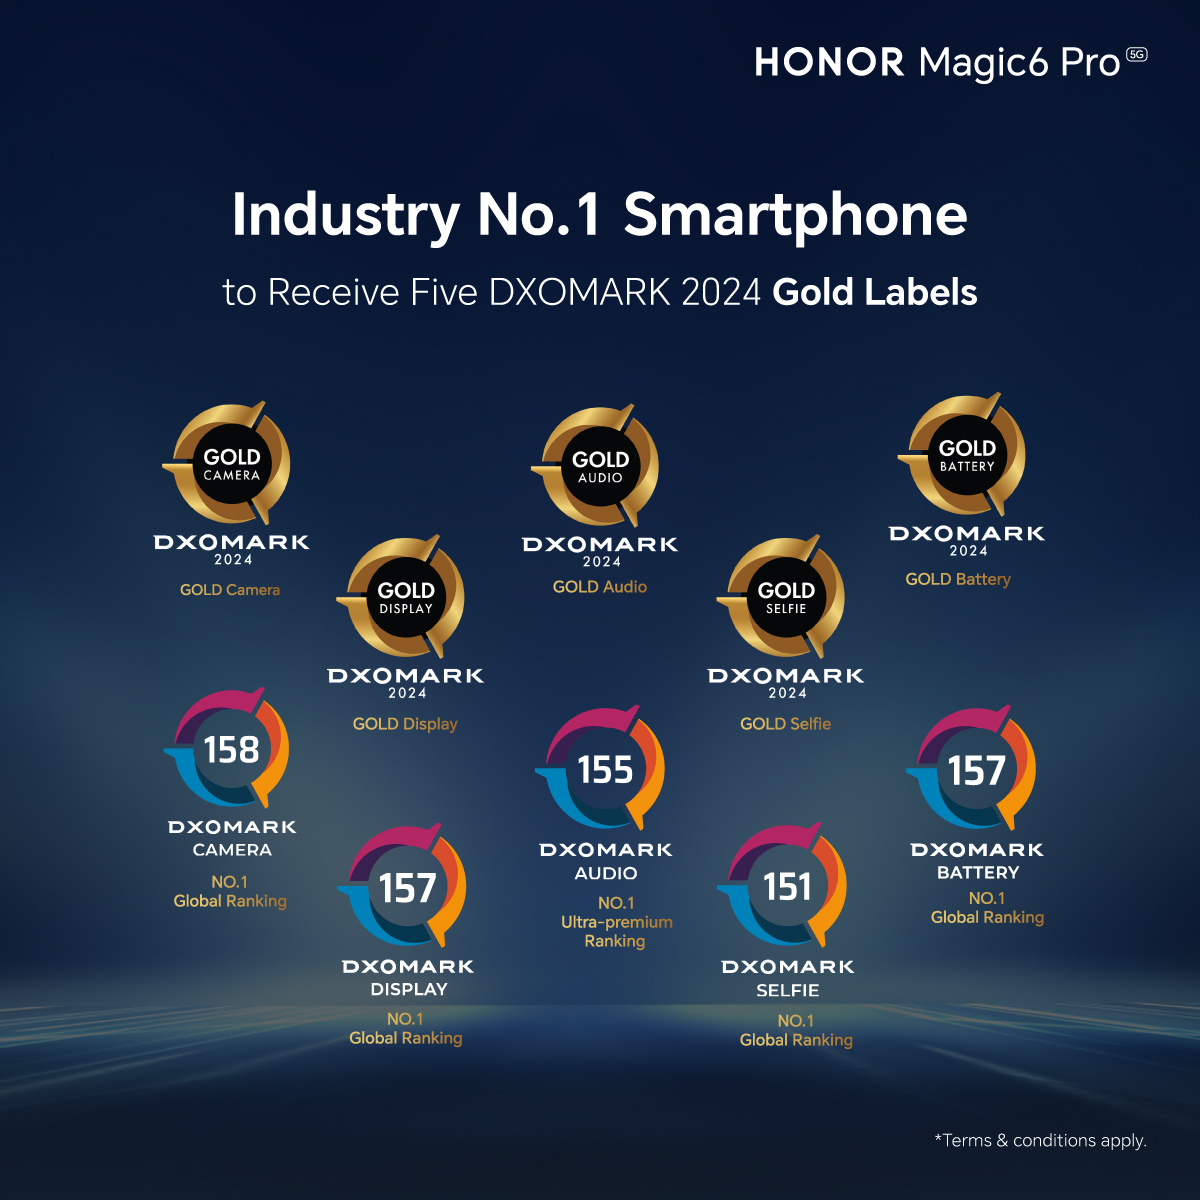 HONOR Magic6 Pro 3月28日全马开售，首销送总值高达1,197令吉礼品 32